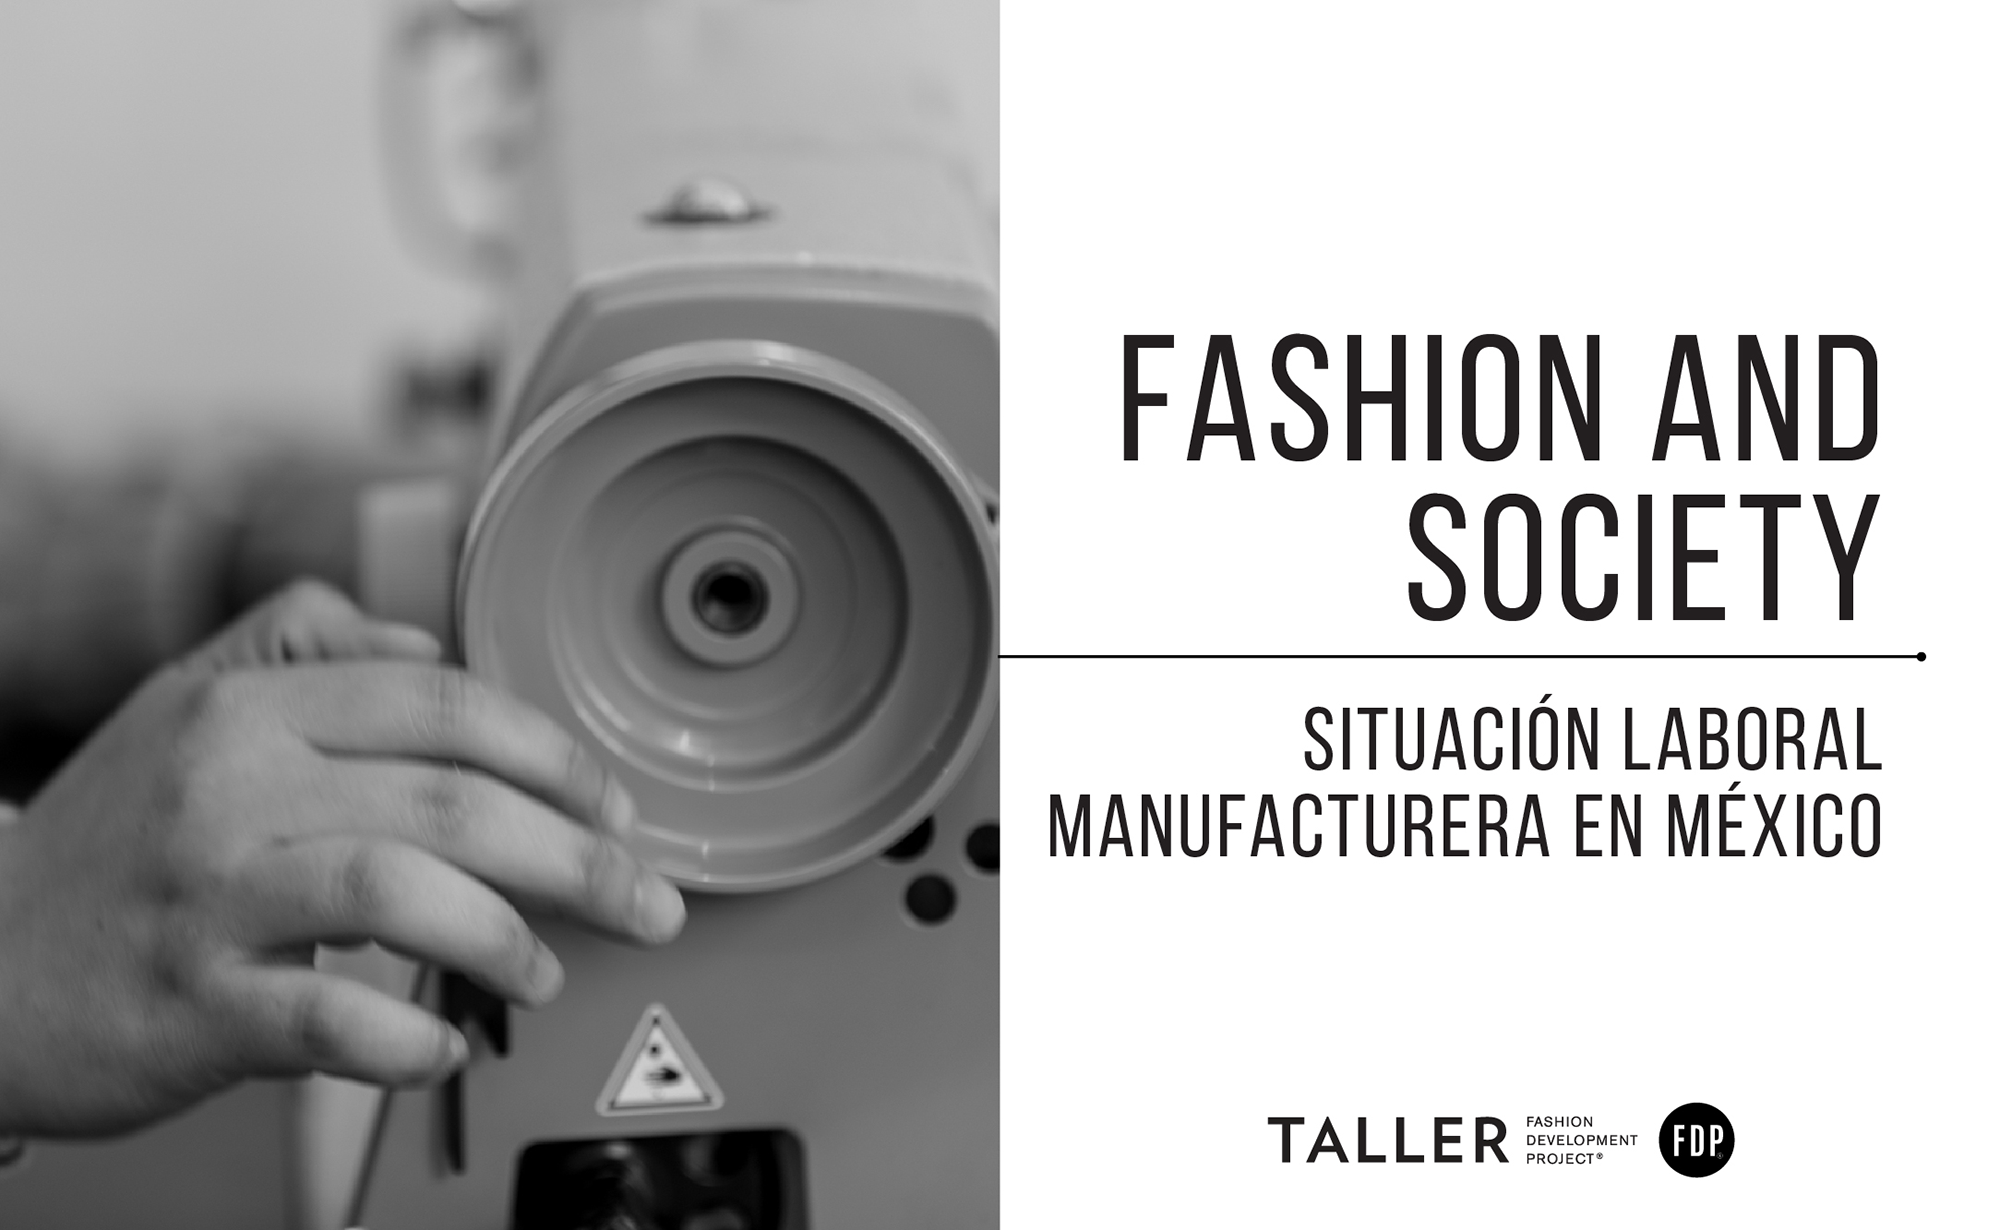 Fashion and society: Situación laboral manufacturera de la industria del vestido en México.